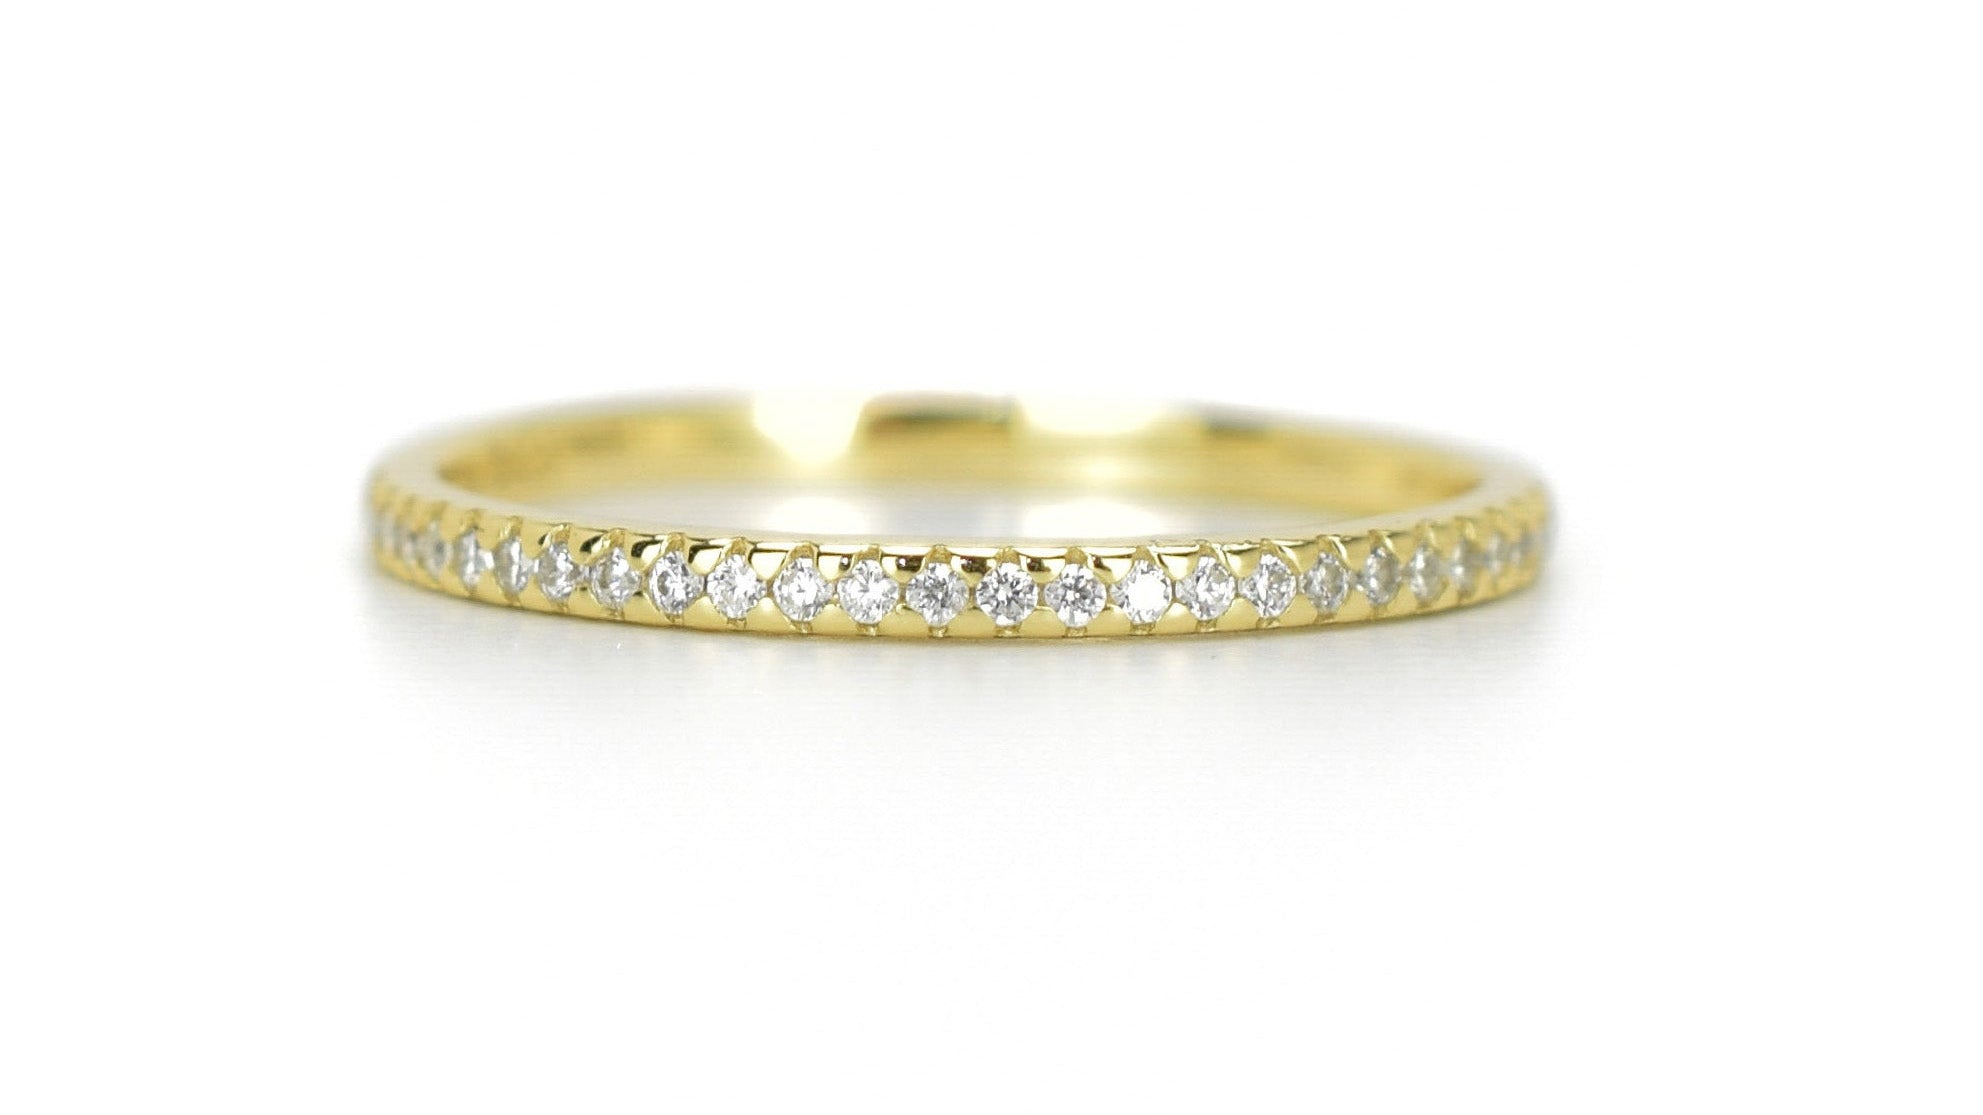 dunnen ring, 18k gouden ring, aanschuifring goud, stapelring goud, fine jewelry, gold ring, 18k Gold Ring, aanschuifring goud, zilveren aanschuifring, ring met stenen, infinity ring rosegoud, trouwring zilver